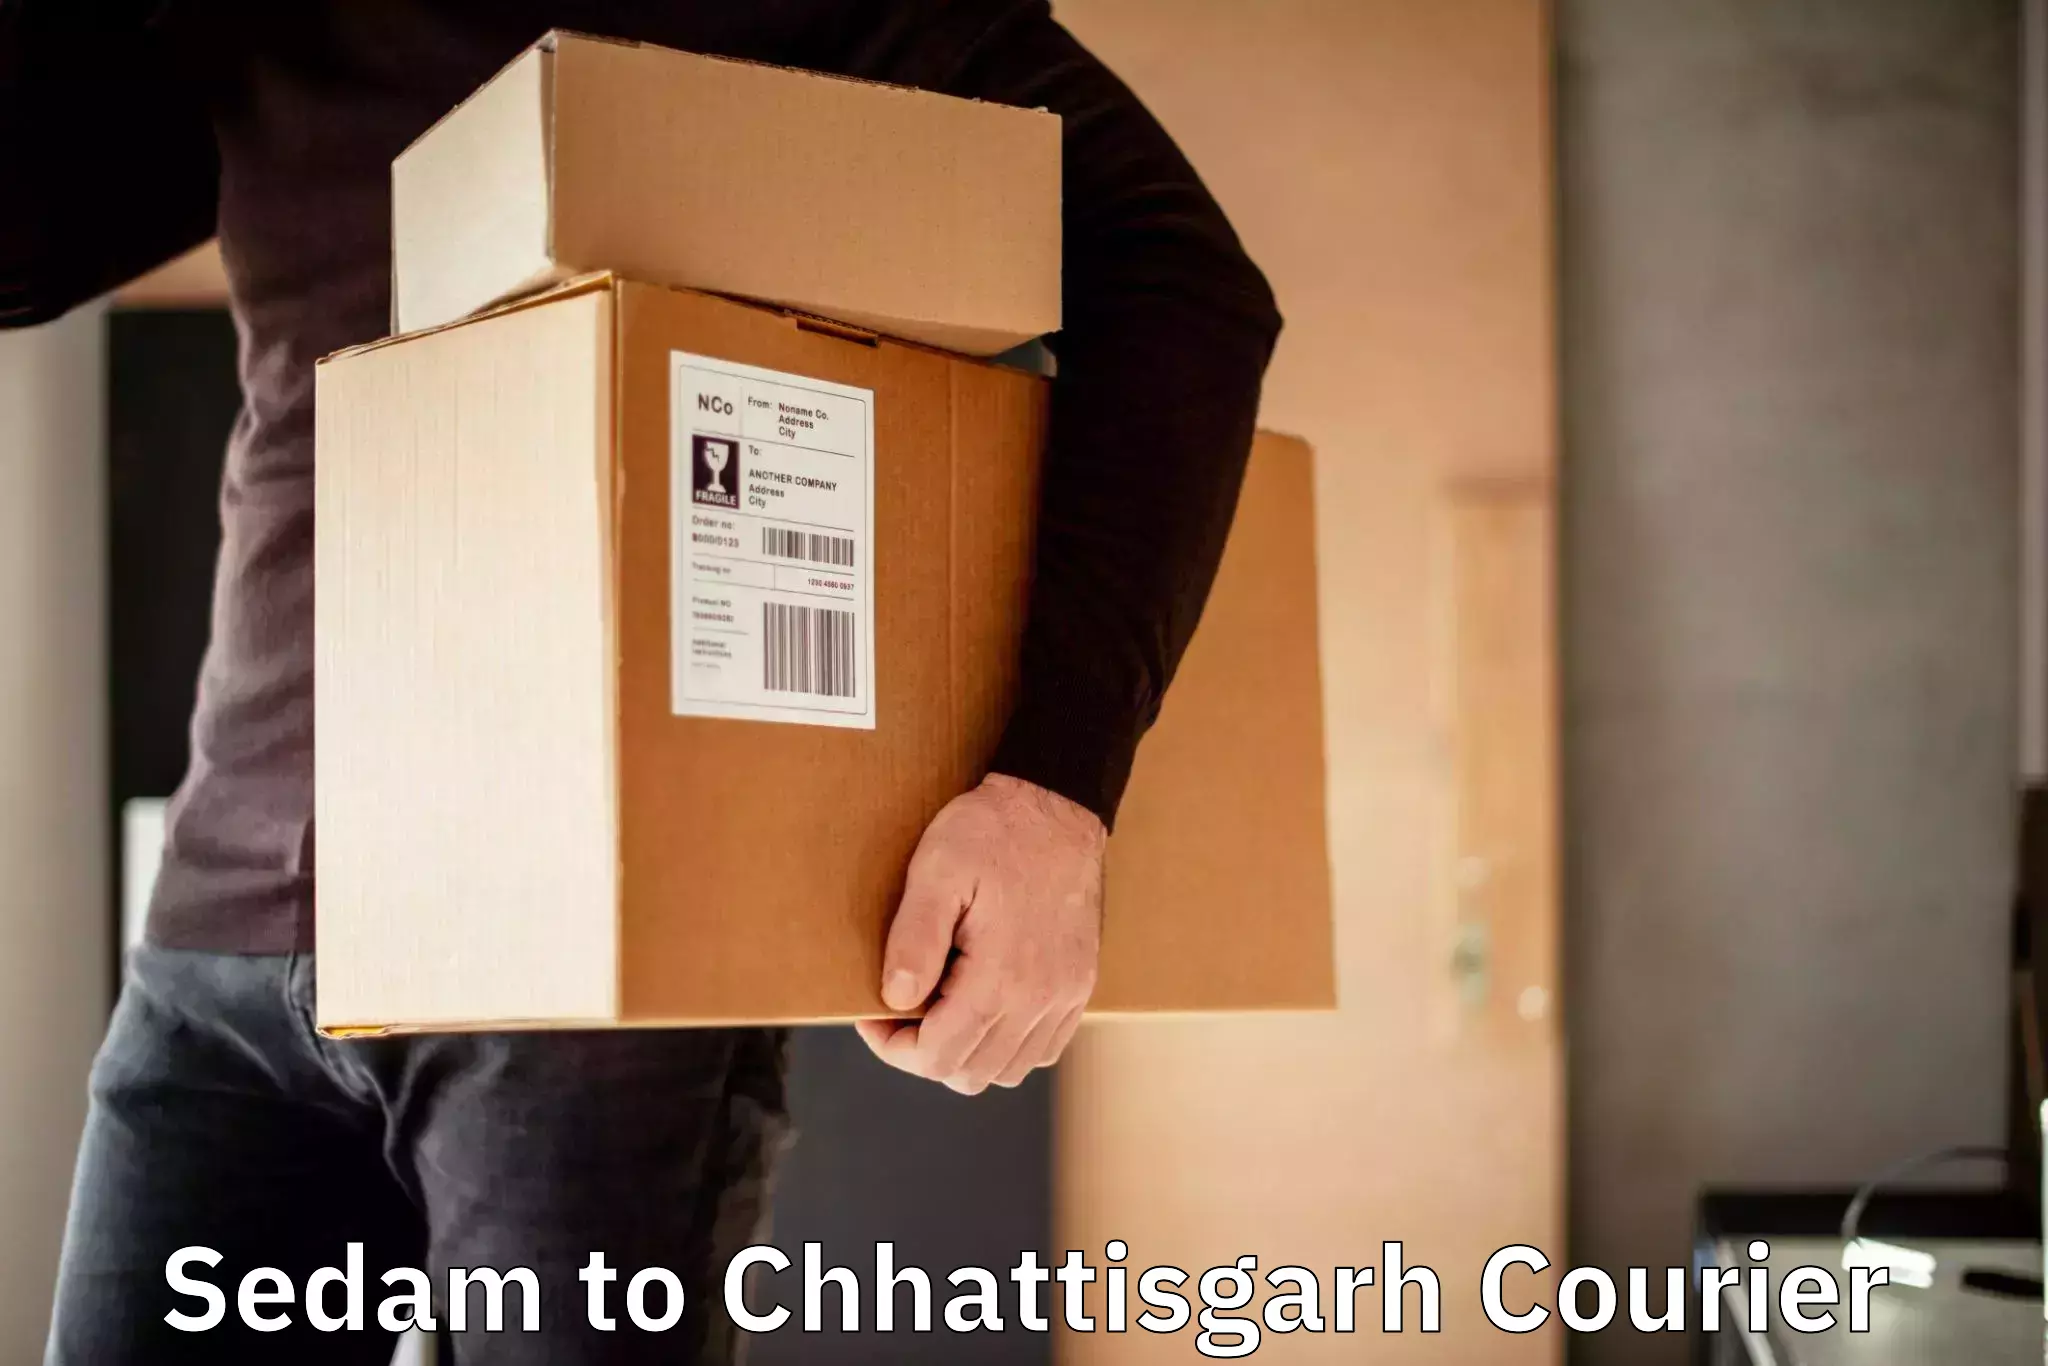 Courier service comparison Sedam to Chhattisgarh